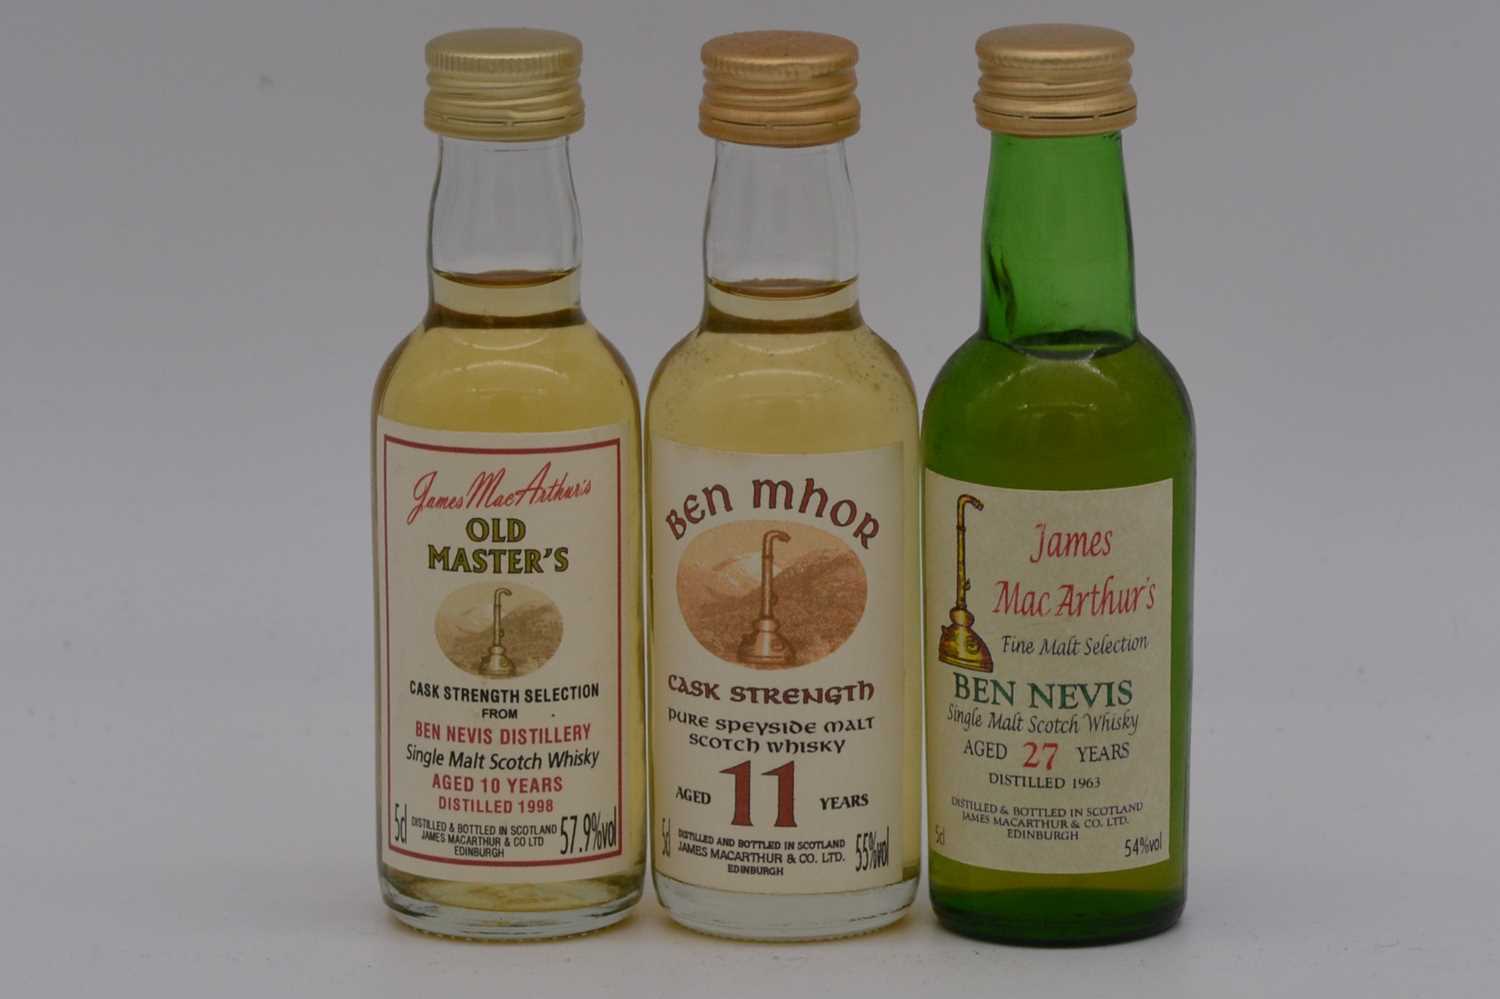 Lot 13 - James MacArthur's - Ben Nevis, and Ben Mhor, three bottlings